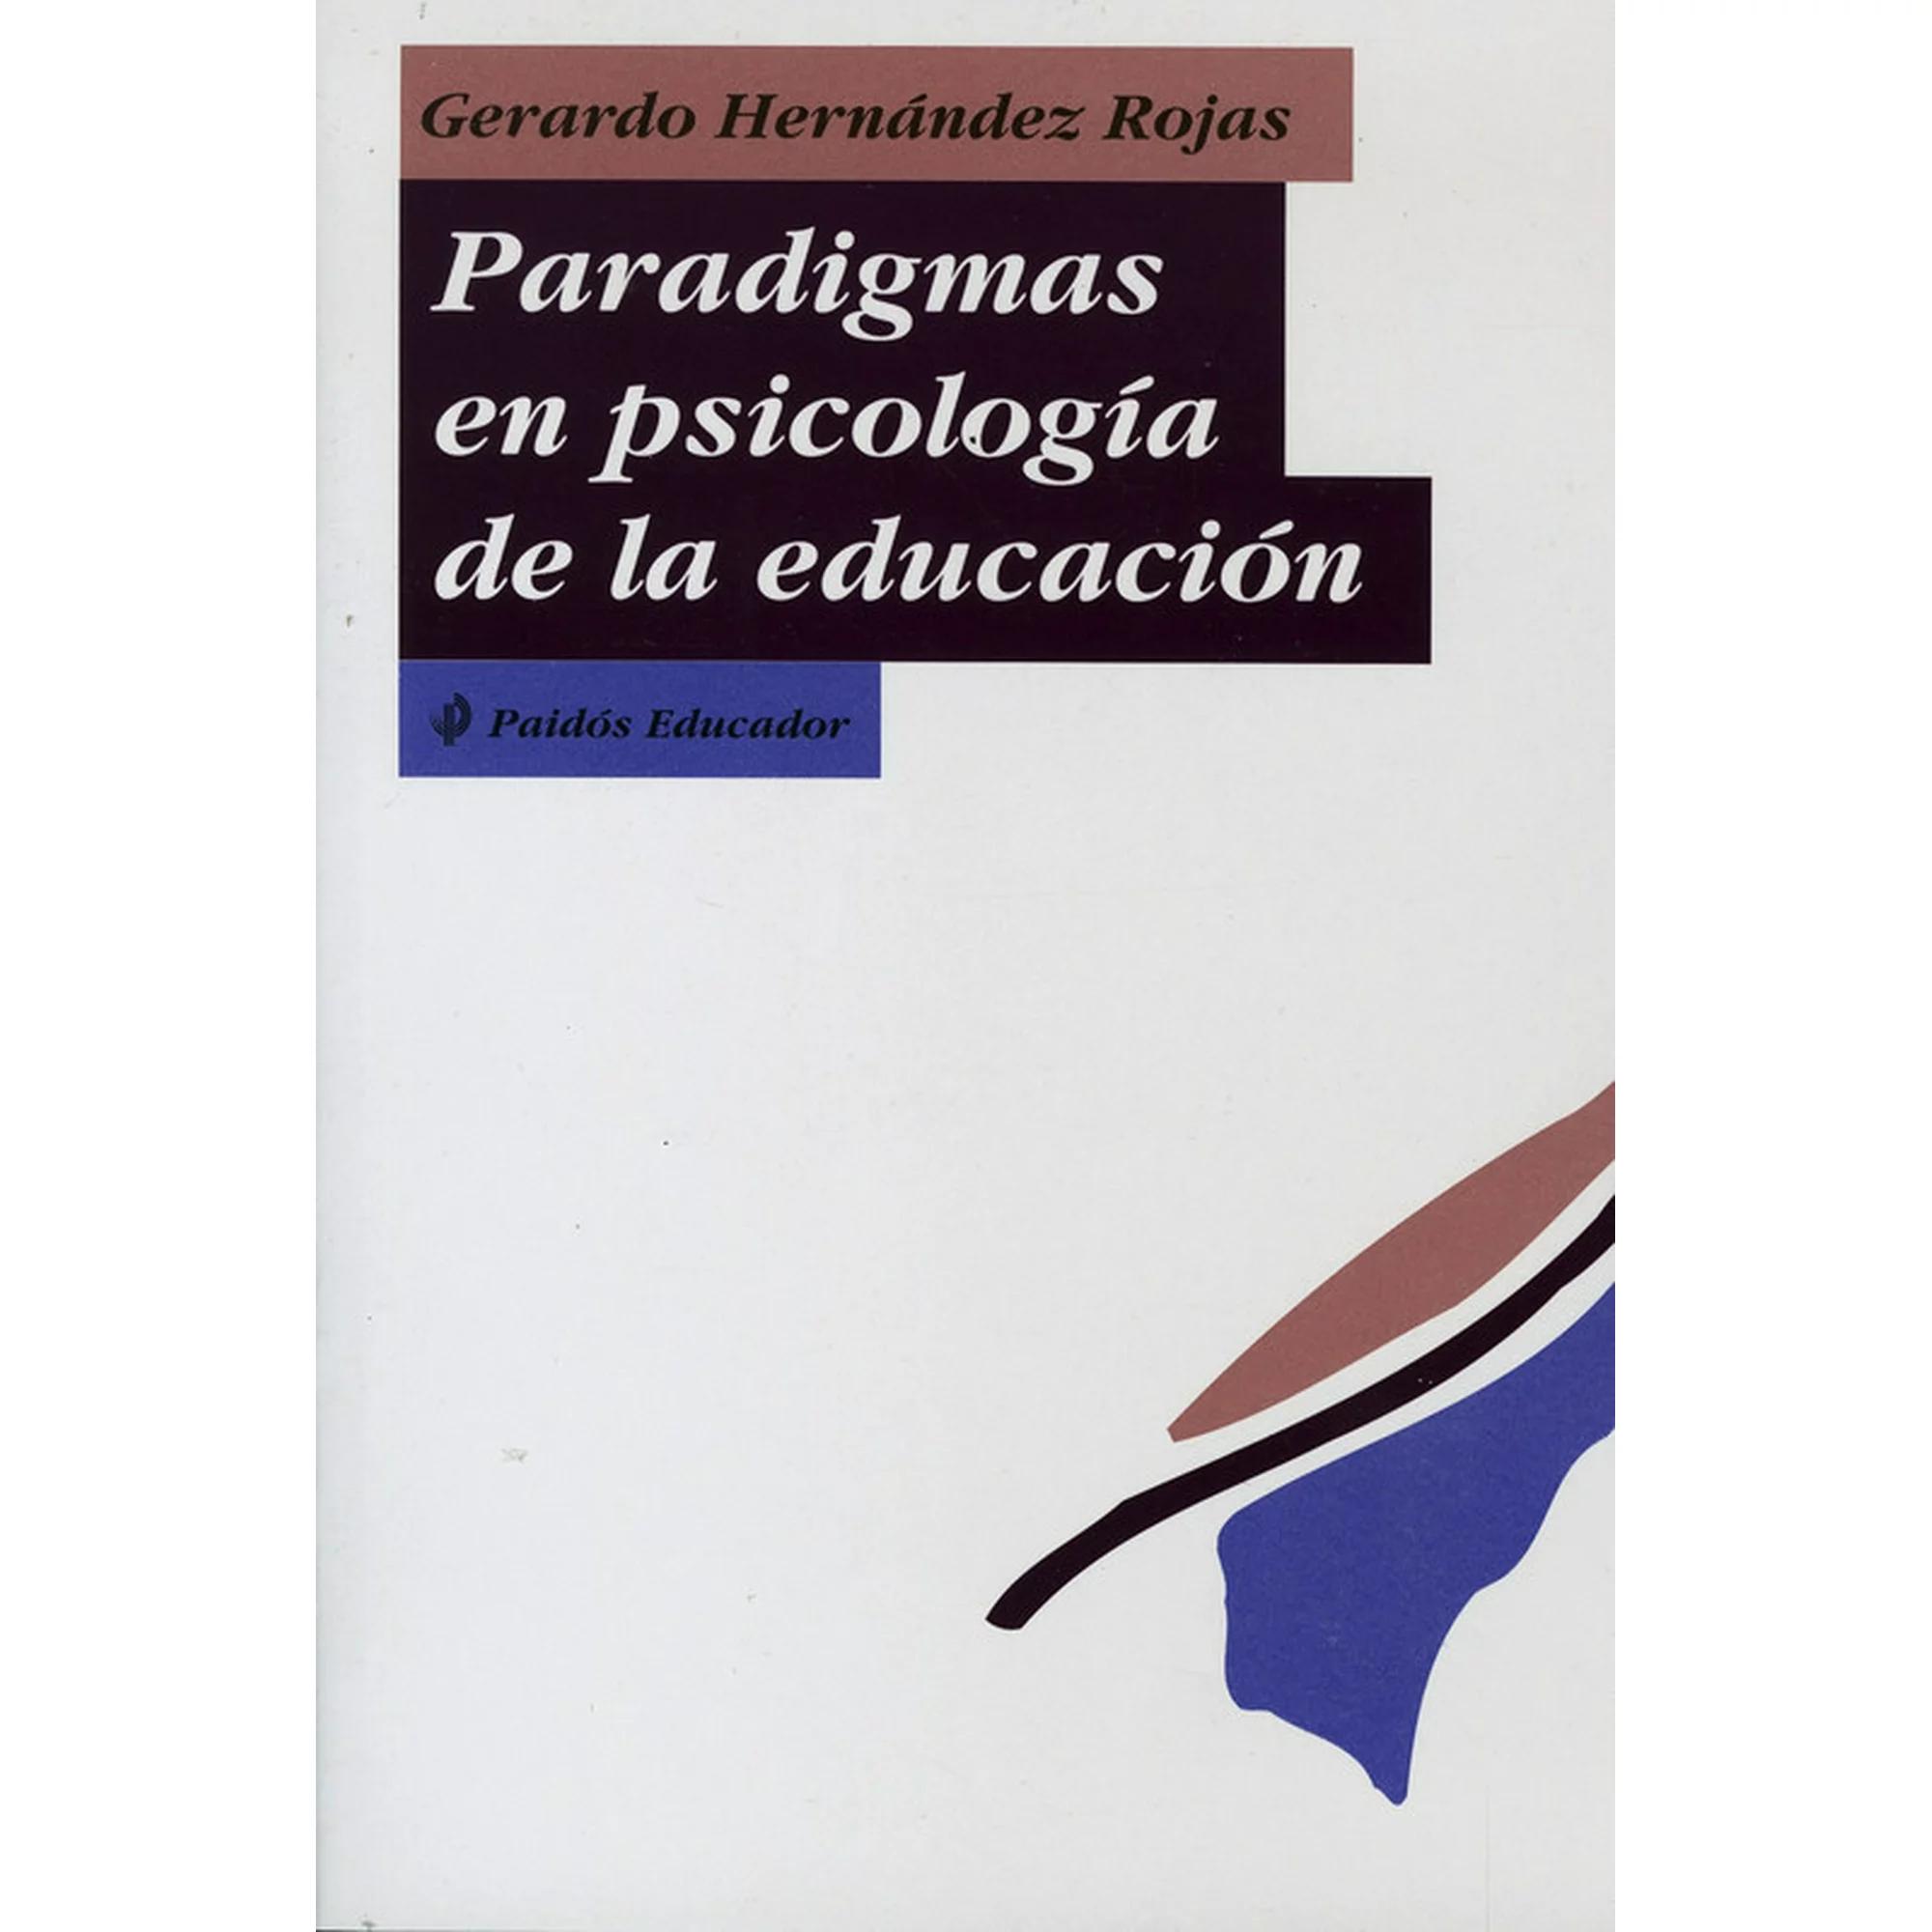 paradigmas en psicologia de la educacion gerardo hernandez rojas resumen - Qué es un paradigma según Hernández Rojas